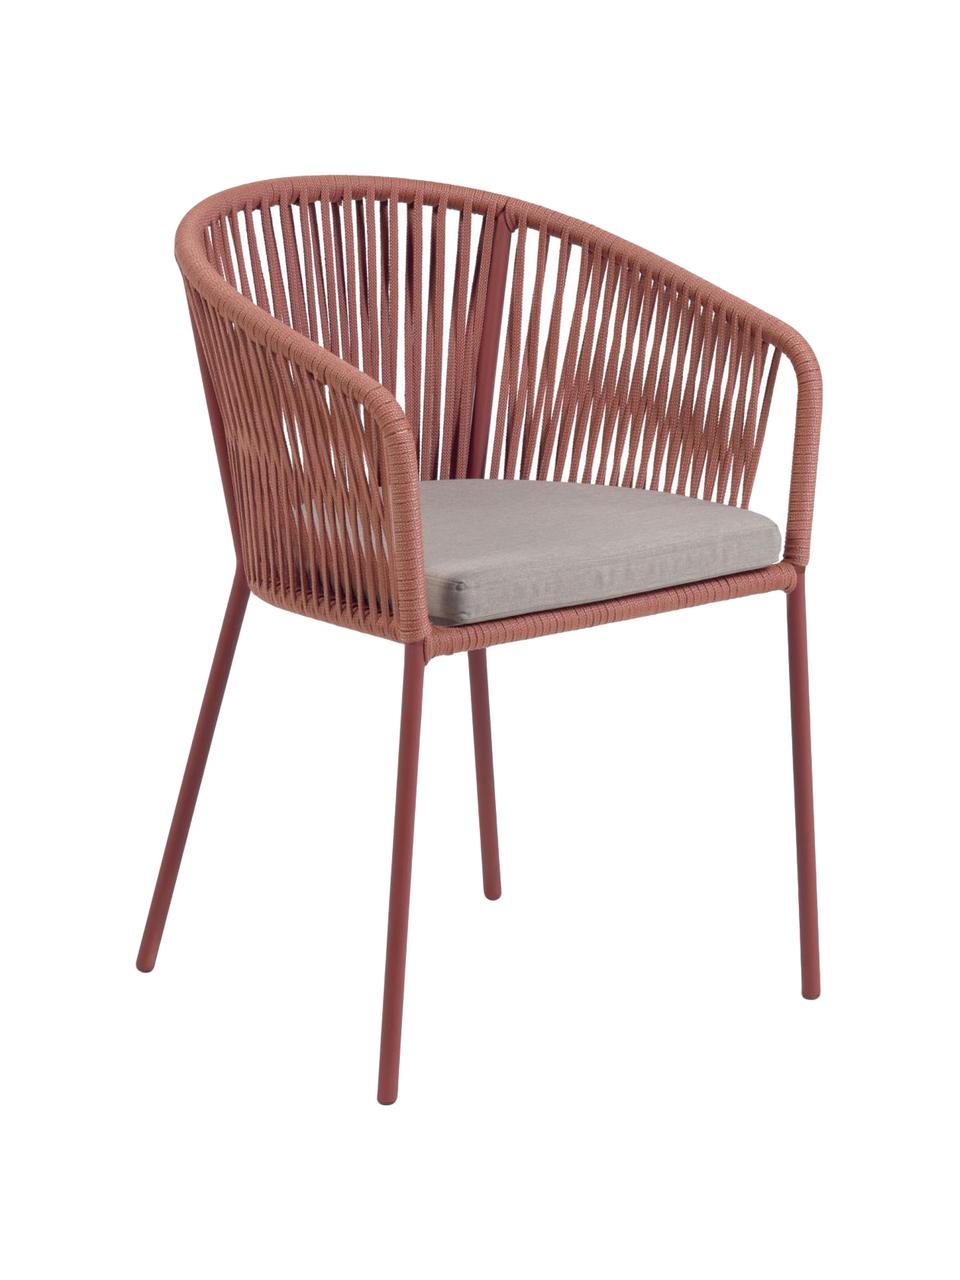 Krzesło ogrodowe Yanet, Stelaż: metal, ocynkowany i lakie, Tapicerka: poliester, Terakota, S 56 x G 51 cm